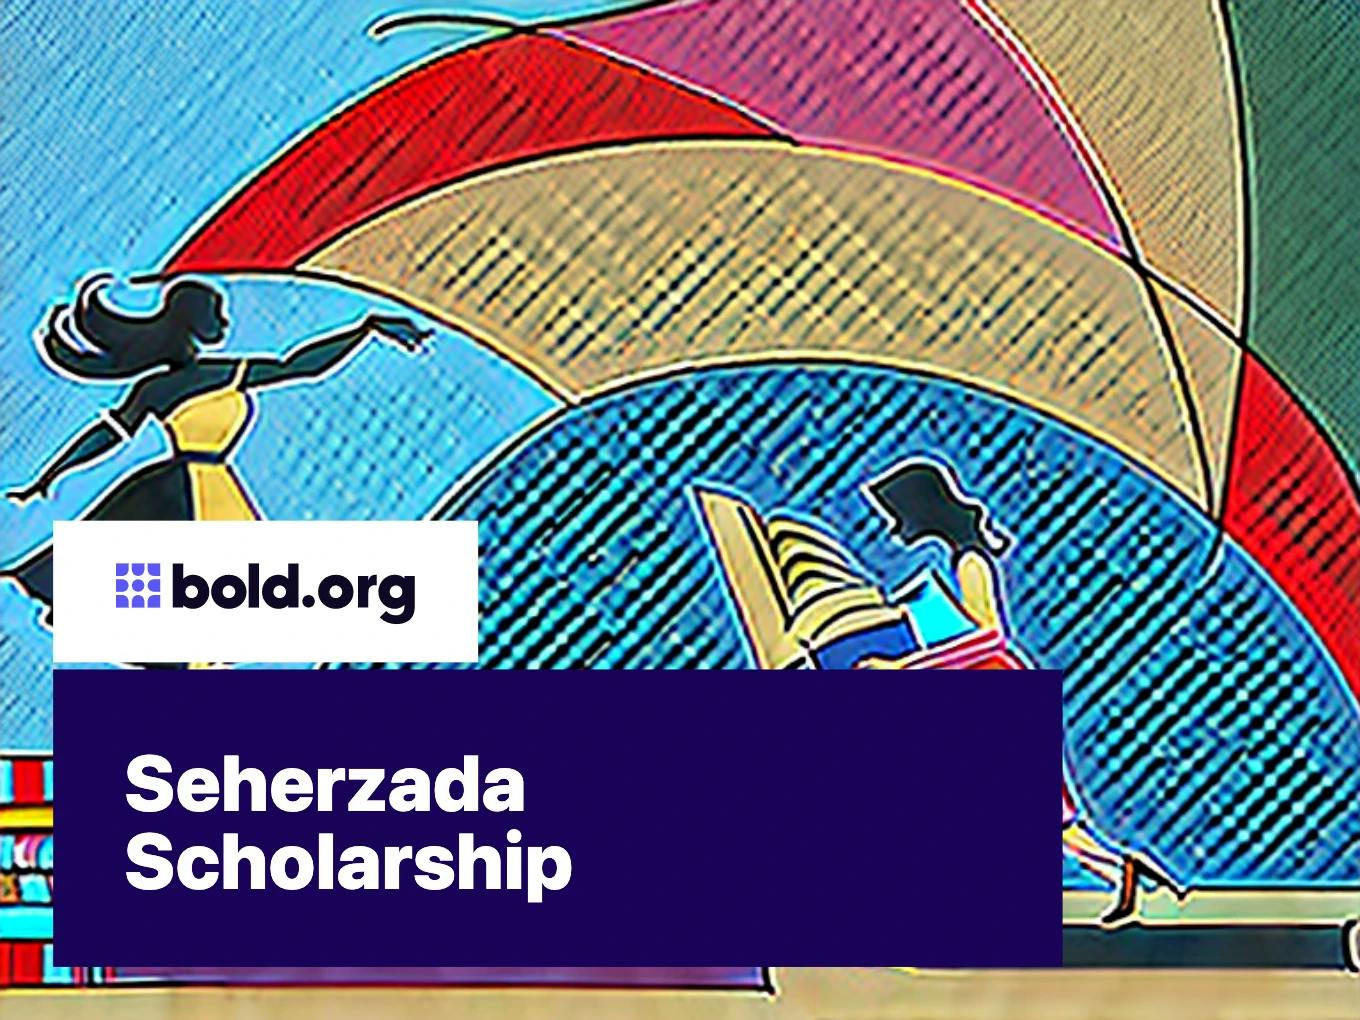 Seherzada Scholarship